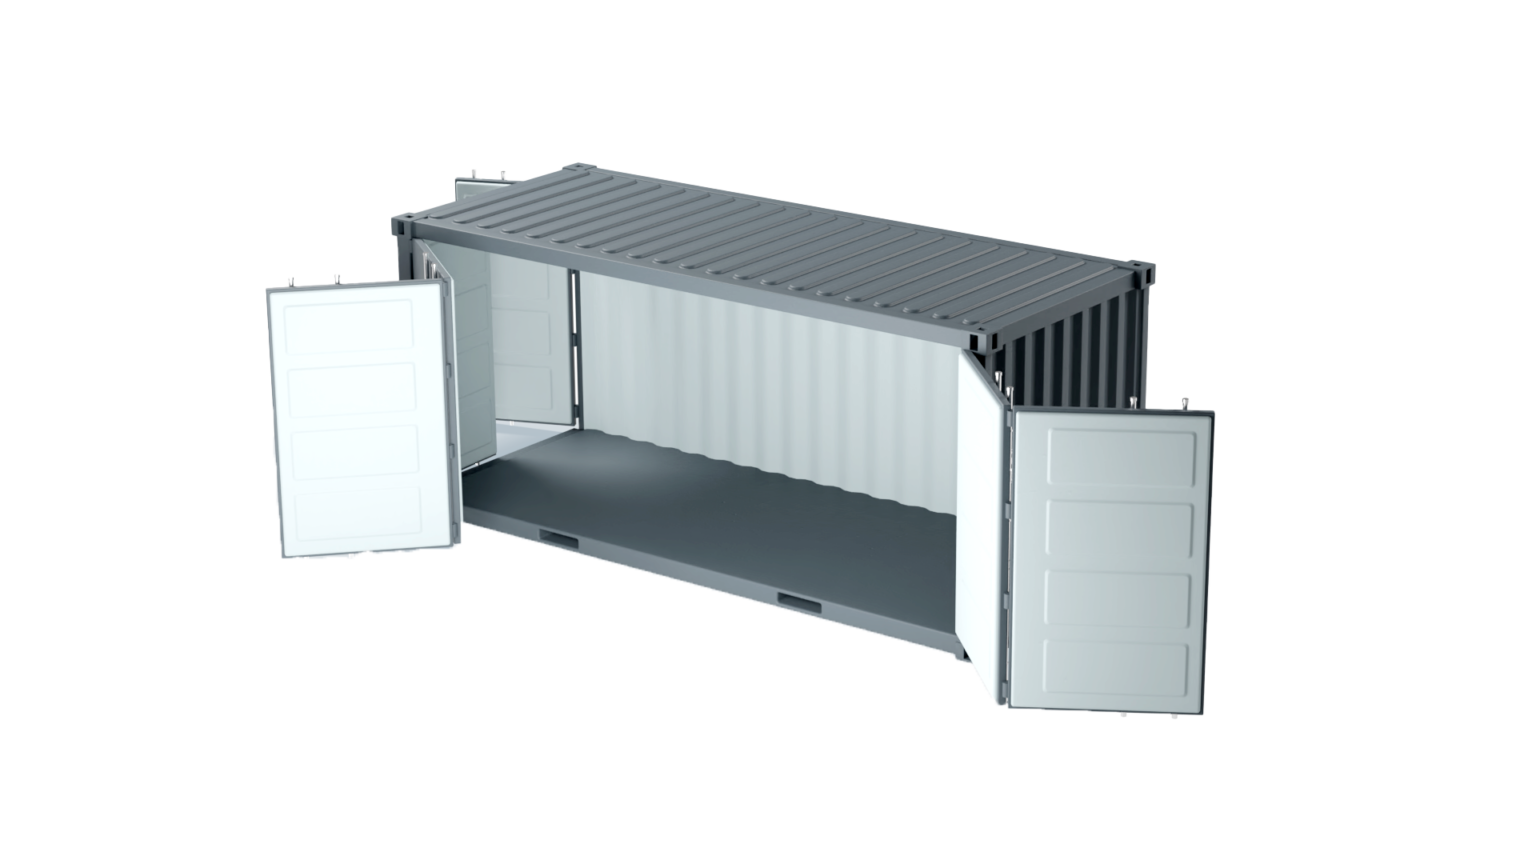 Container maritime 20 pieds hc openside disponible neuf et occasion pour stockage flexible, adaptable et économique- eurobox_0